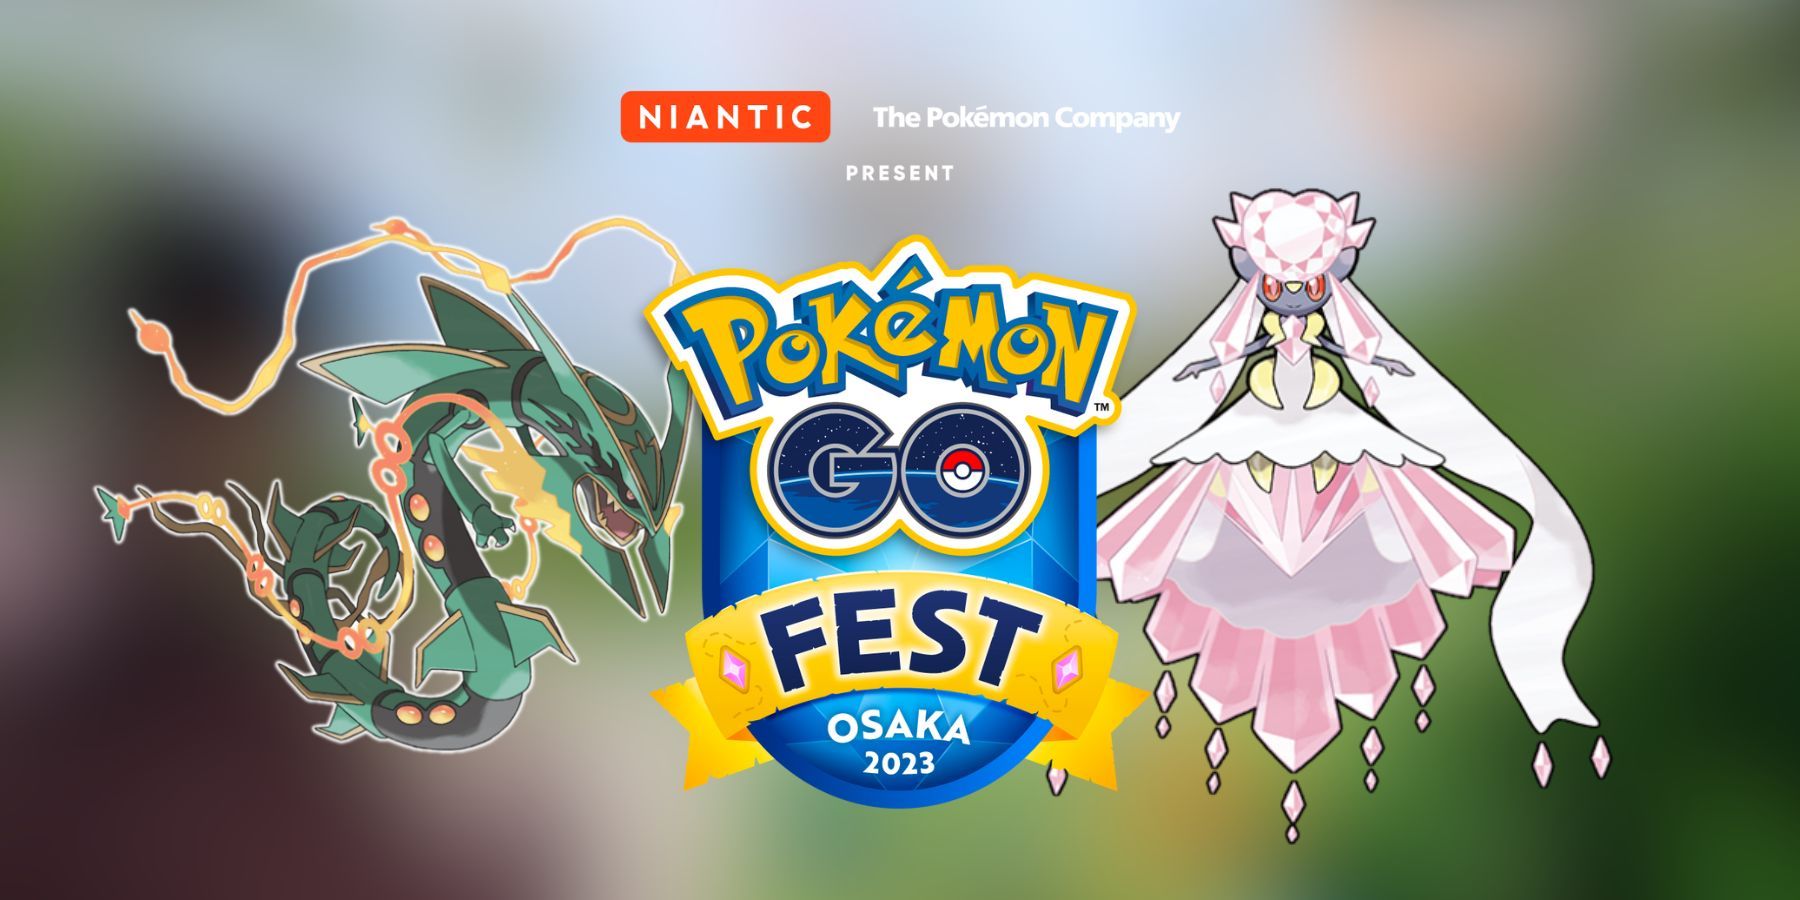 Fest 2023 Osaka in Pokemon GO